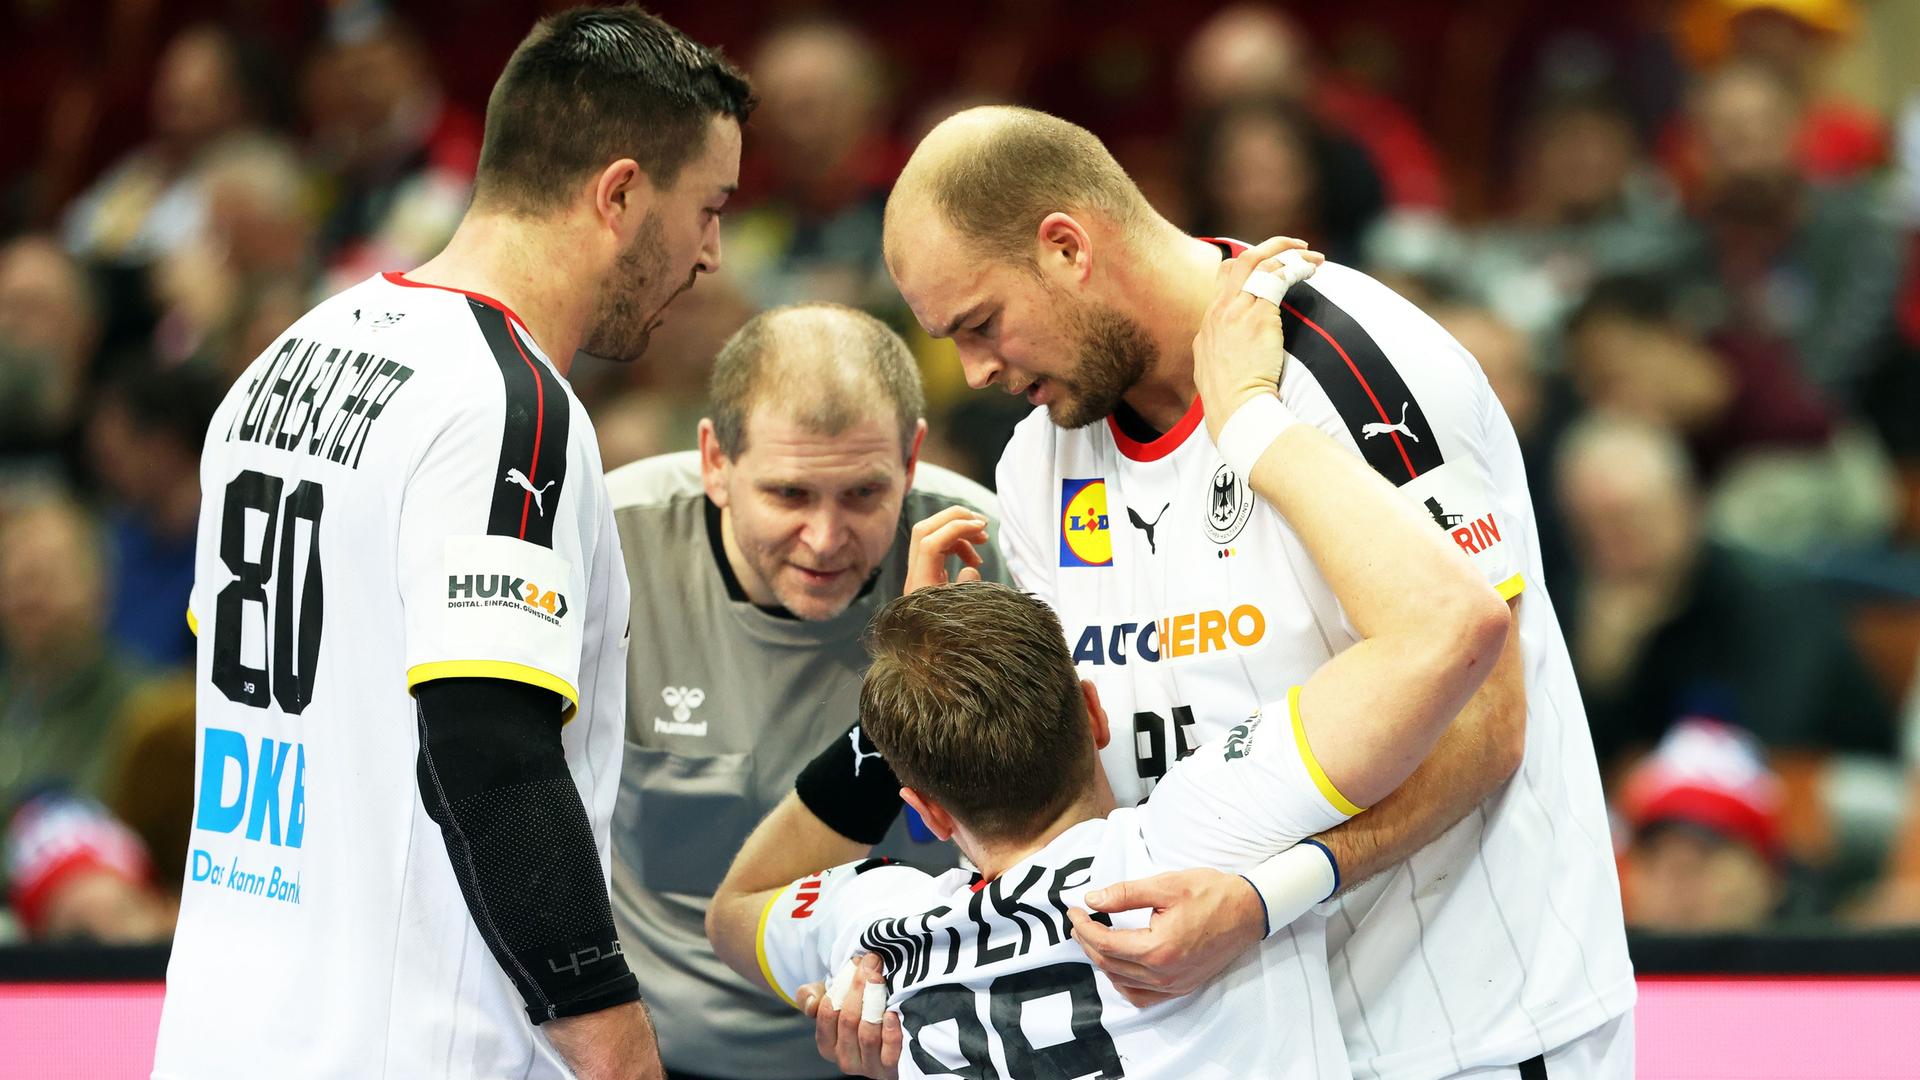 Deutsche Spieler bei der Handball-WM im Spiel gegen Argentinien: Paul Drux (rechts) kümmert sich um seinen Teamkollegen Luca Witzke (2. von rechts).